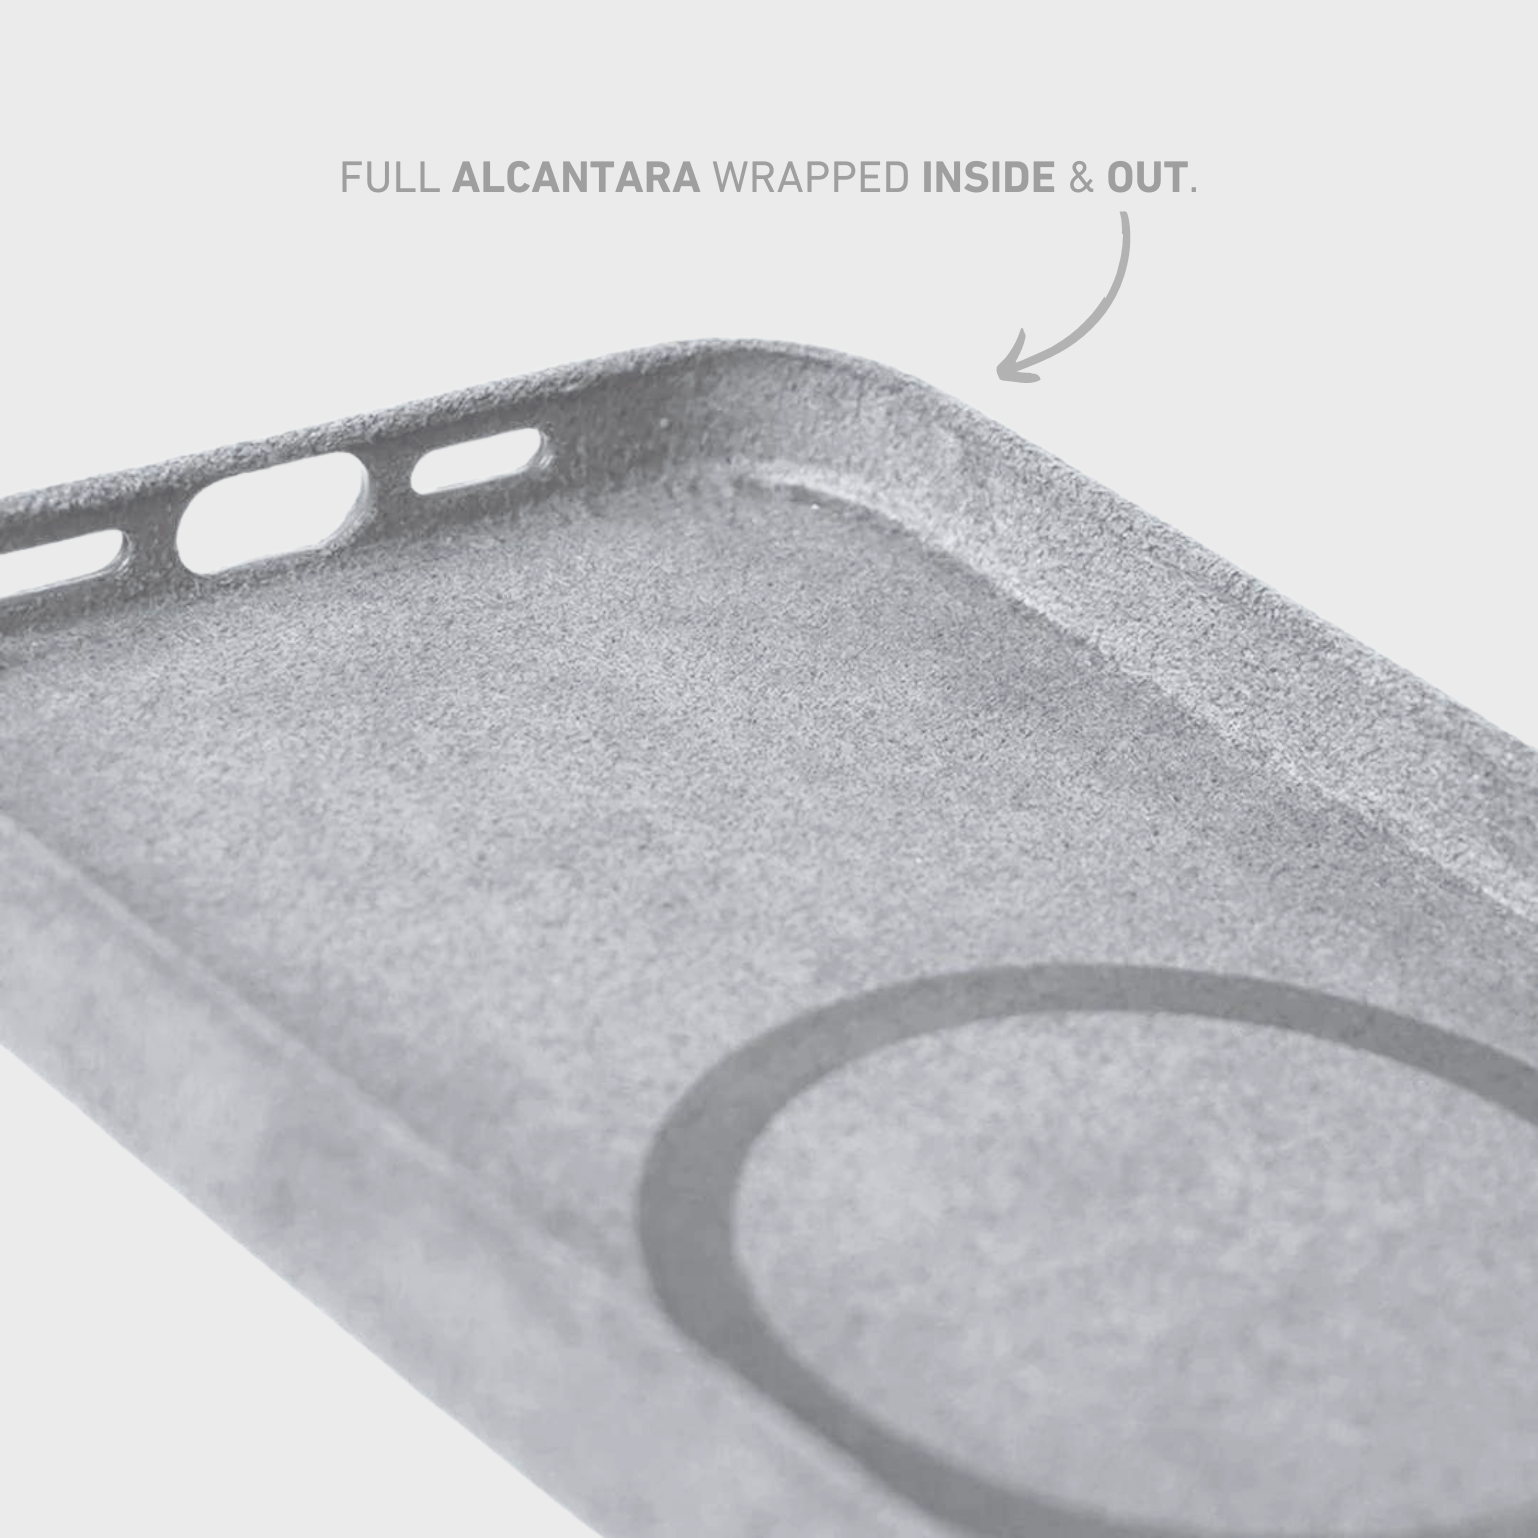 Alcantara iPhone Case + AirPod Case - Moon Gray Edition